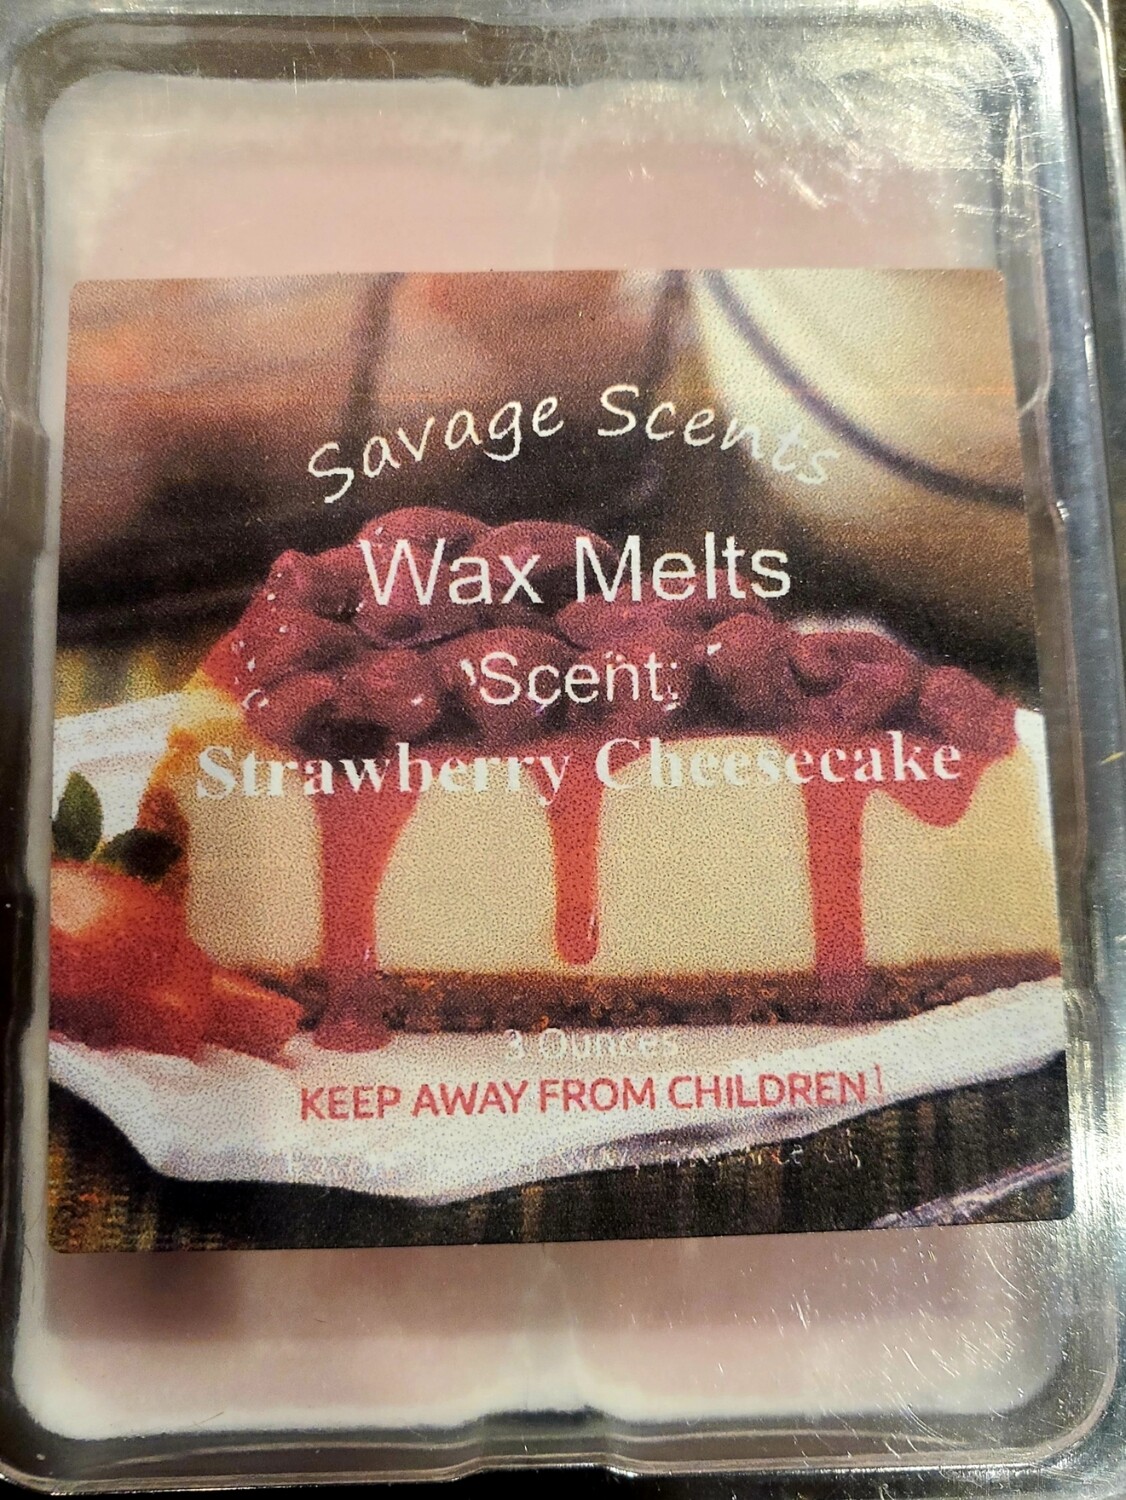 Strawberry Cheesecake Wax Melts